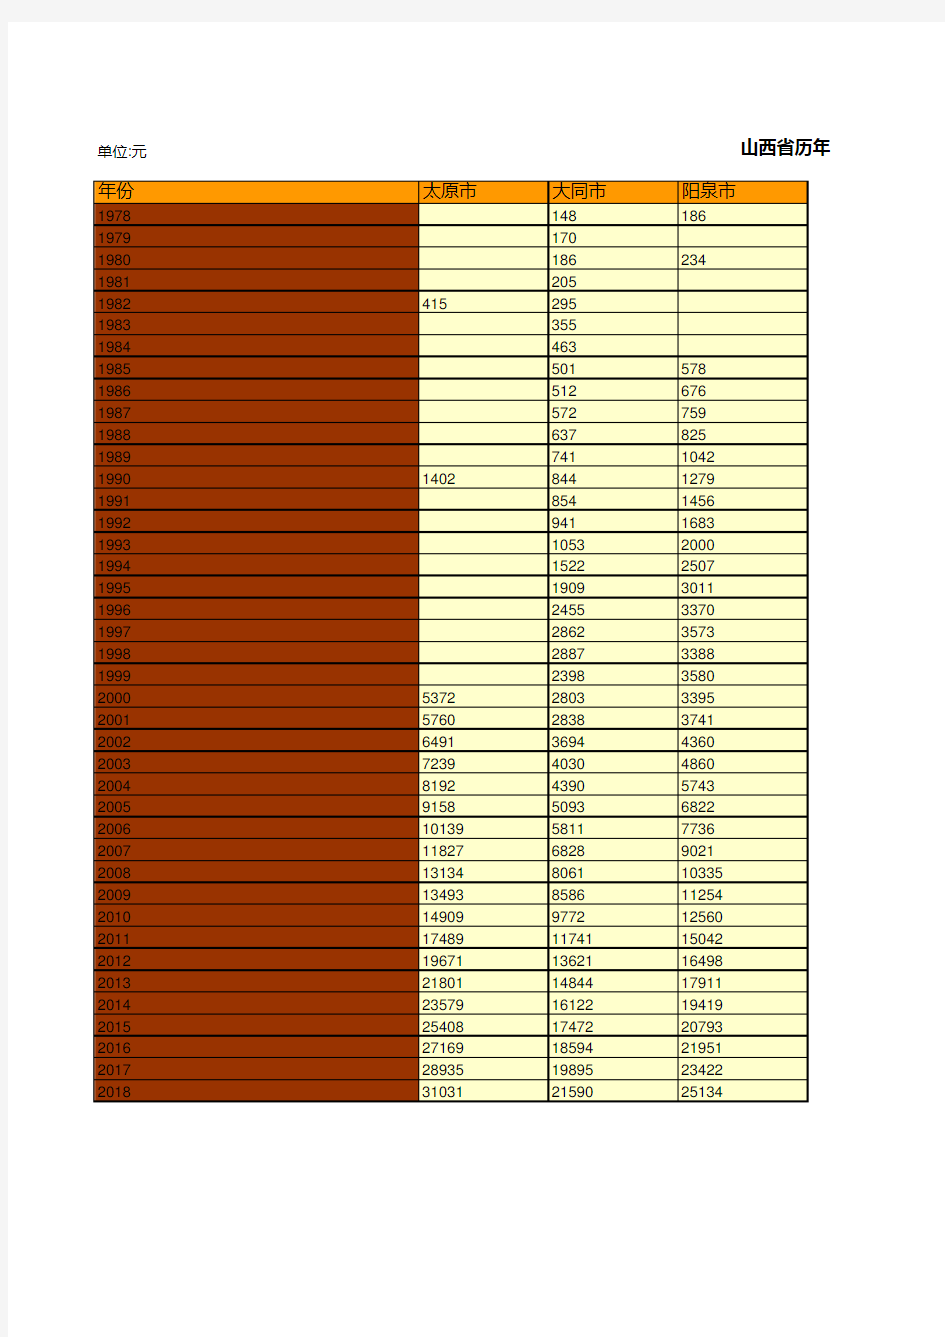 山西全省各市县区历年全体居民人均可支配收入统计(1978-2019)